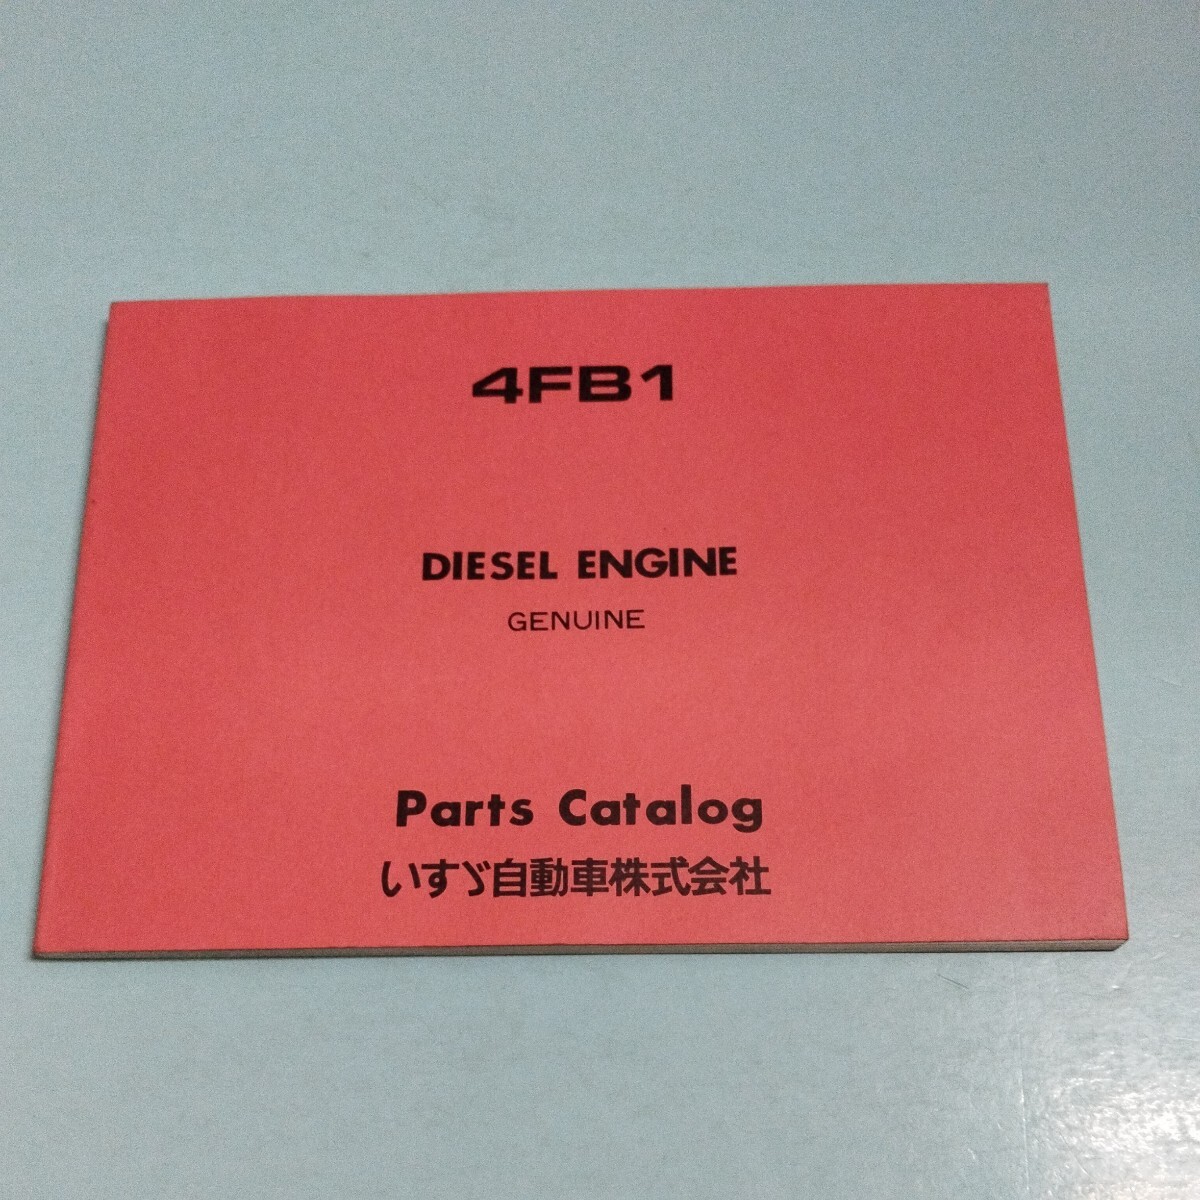 いすゞ ディーゼルエンジン 4FB1 パーツカタログの画像1